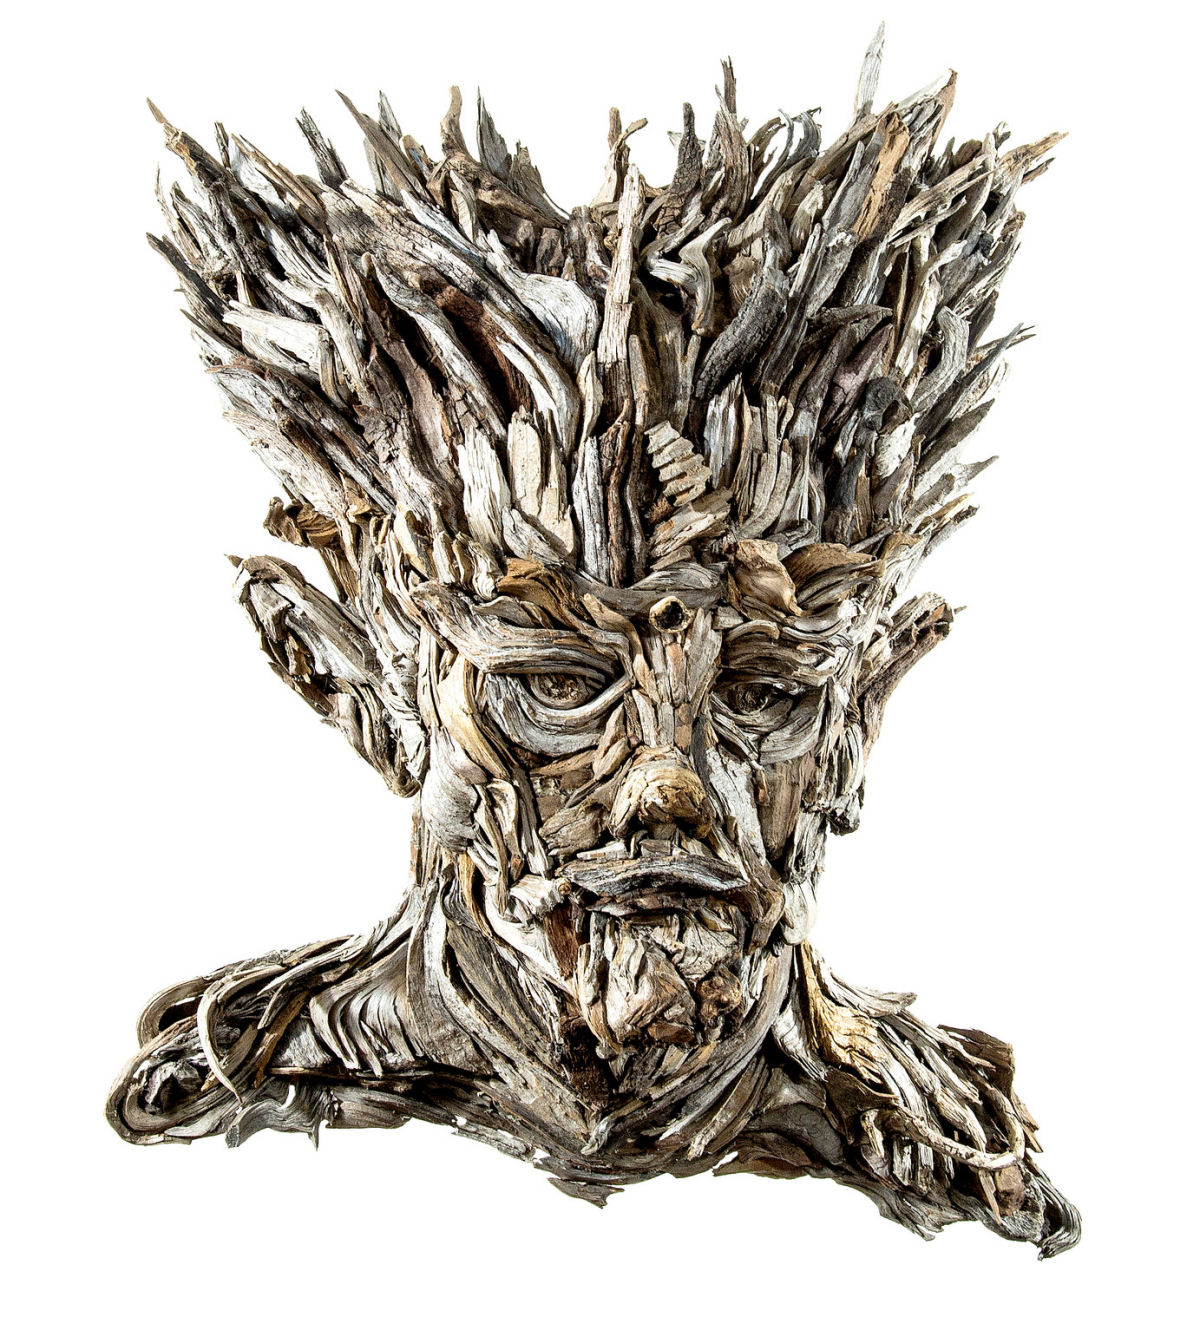 Faces retorcidas emergem de retratos esculturais feitos com restos de madeira 01